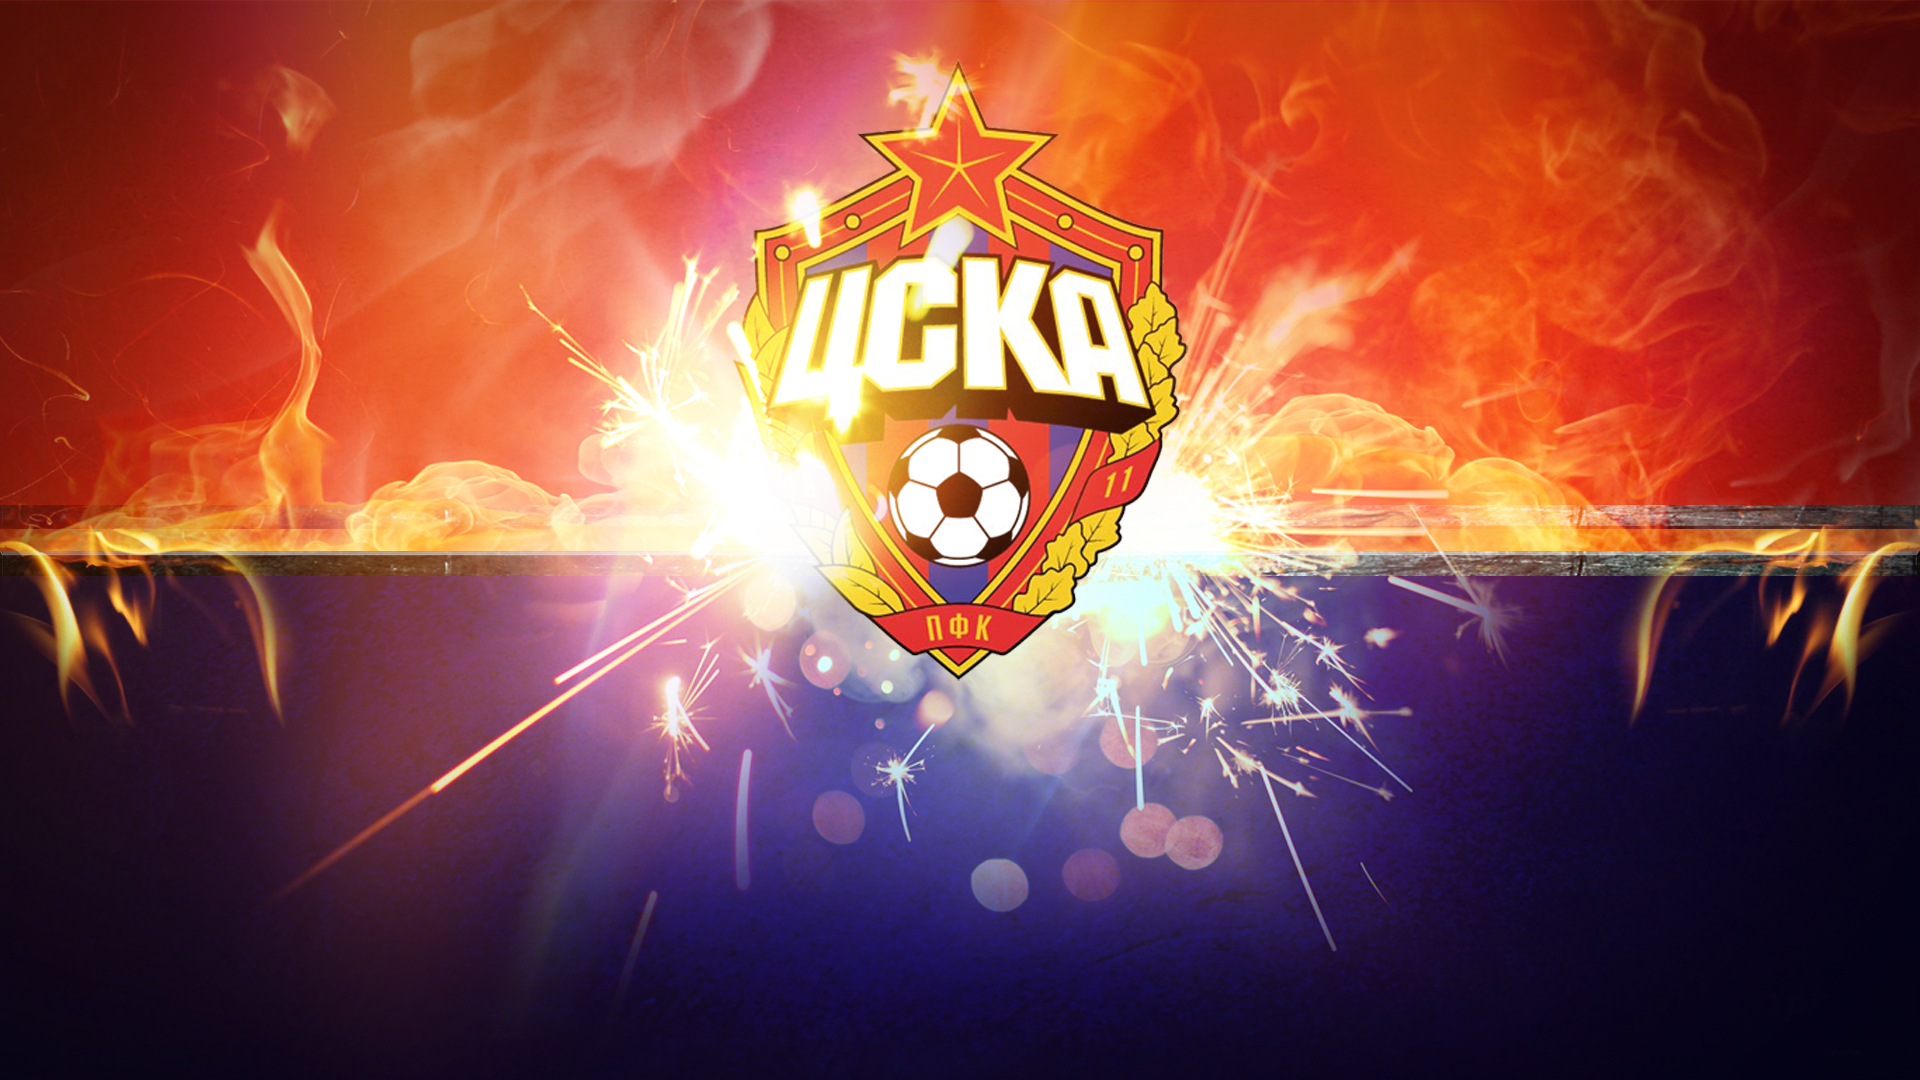 Descarga gratuita de fondo de pantalla para móvil de Fútbol, Logo, Emblema, Deporte, Pfc Cska Moscú.